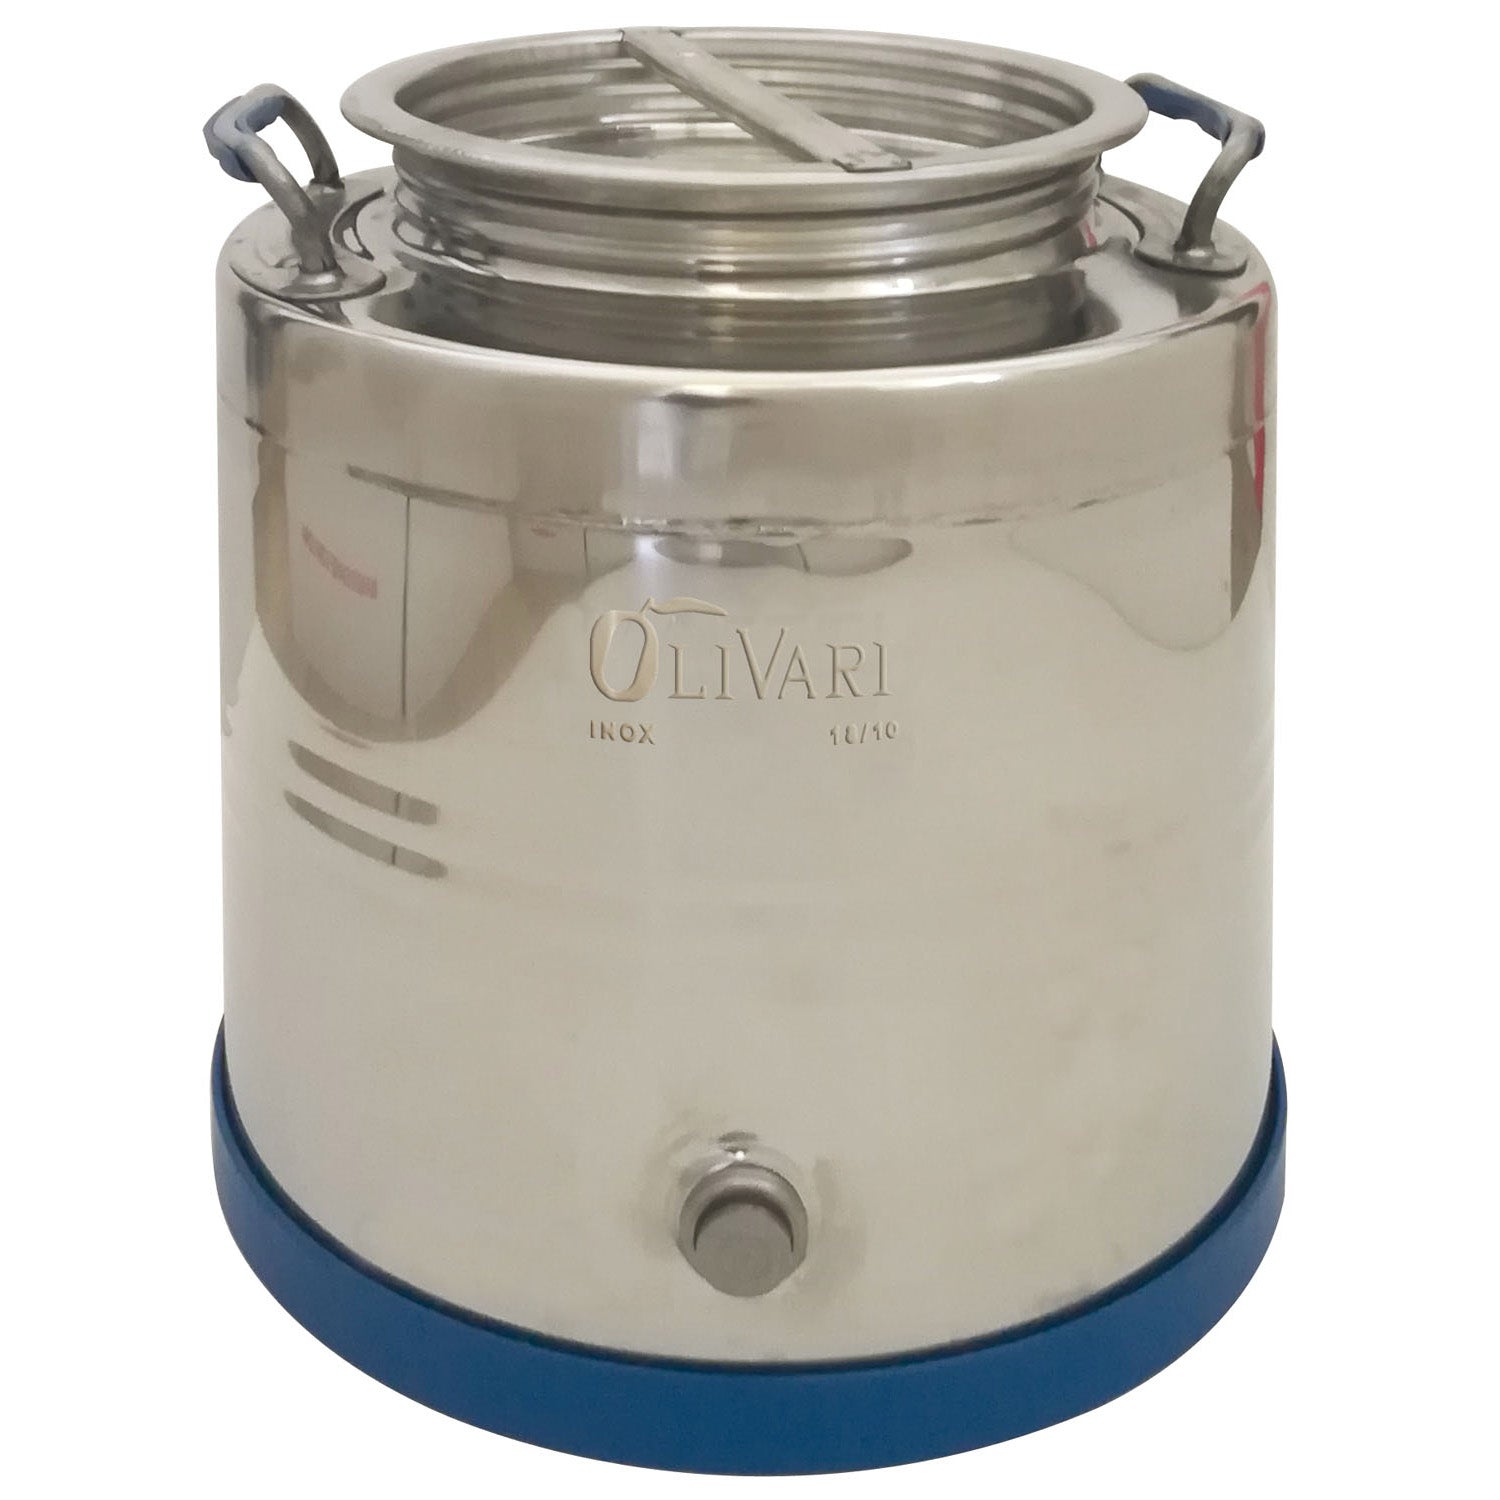 Olivari blindo - contenitore per olio in acciaio inox 30 lt